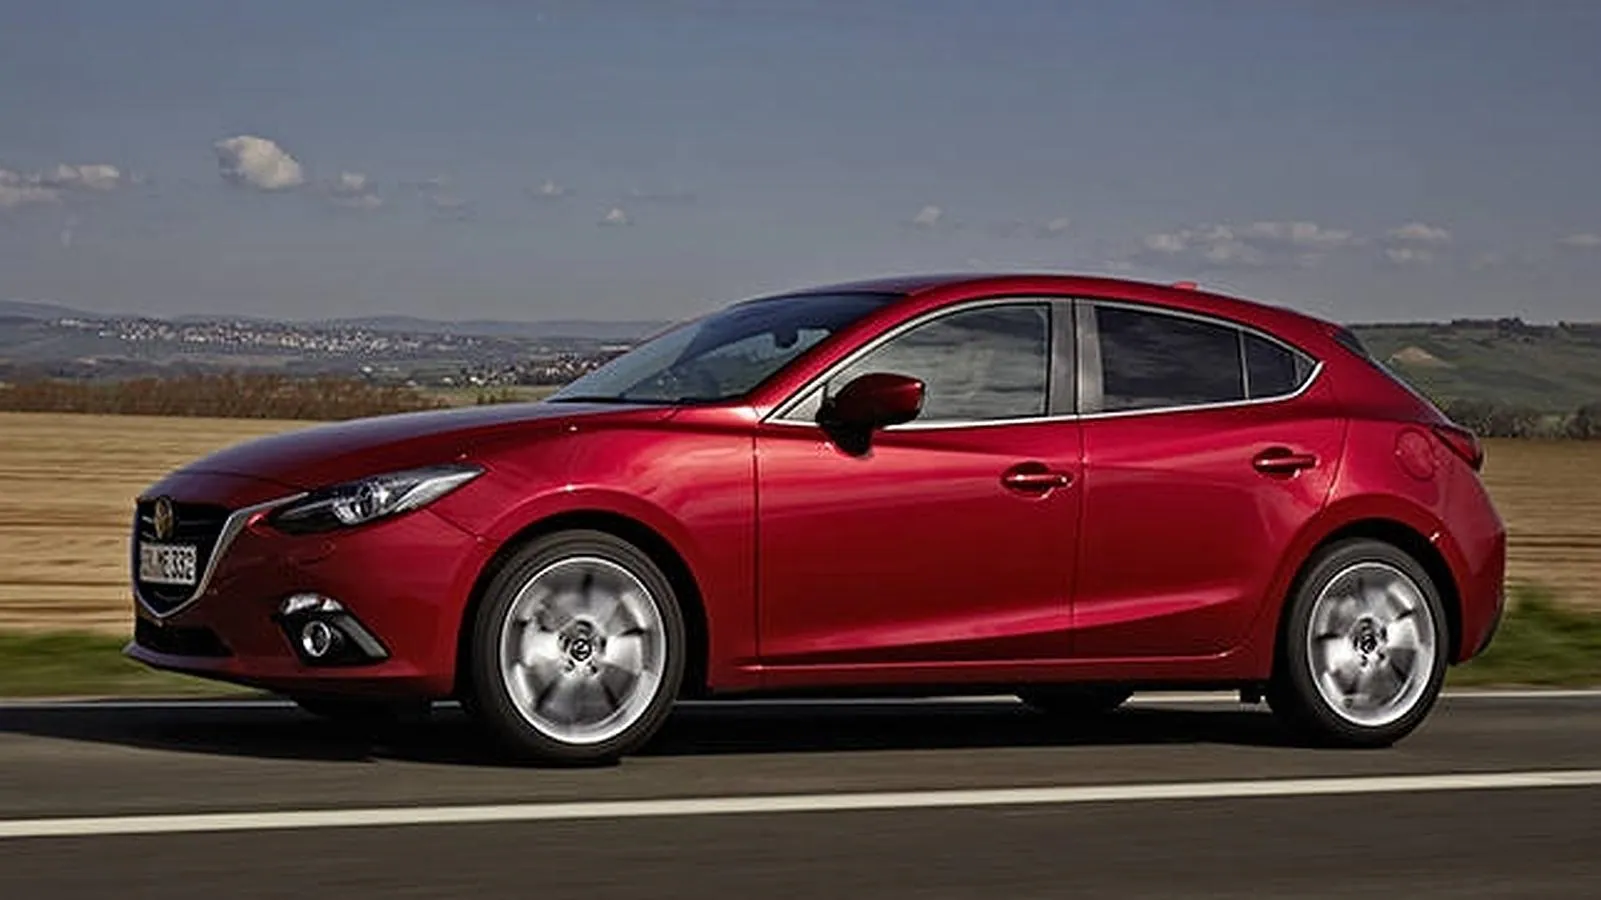 Vista lateral del nuevo Mazda3 1.5 SKYACTIV-D